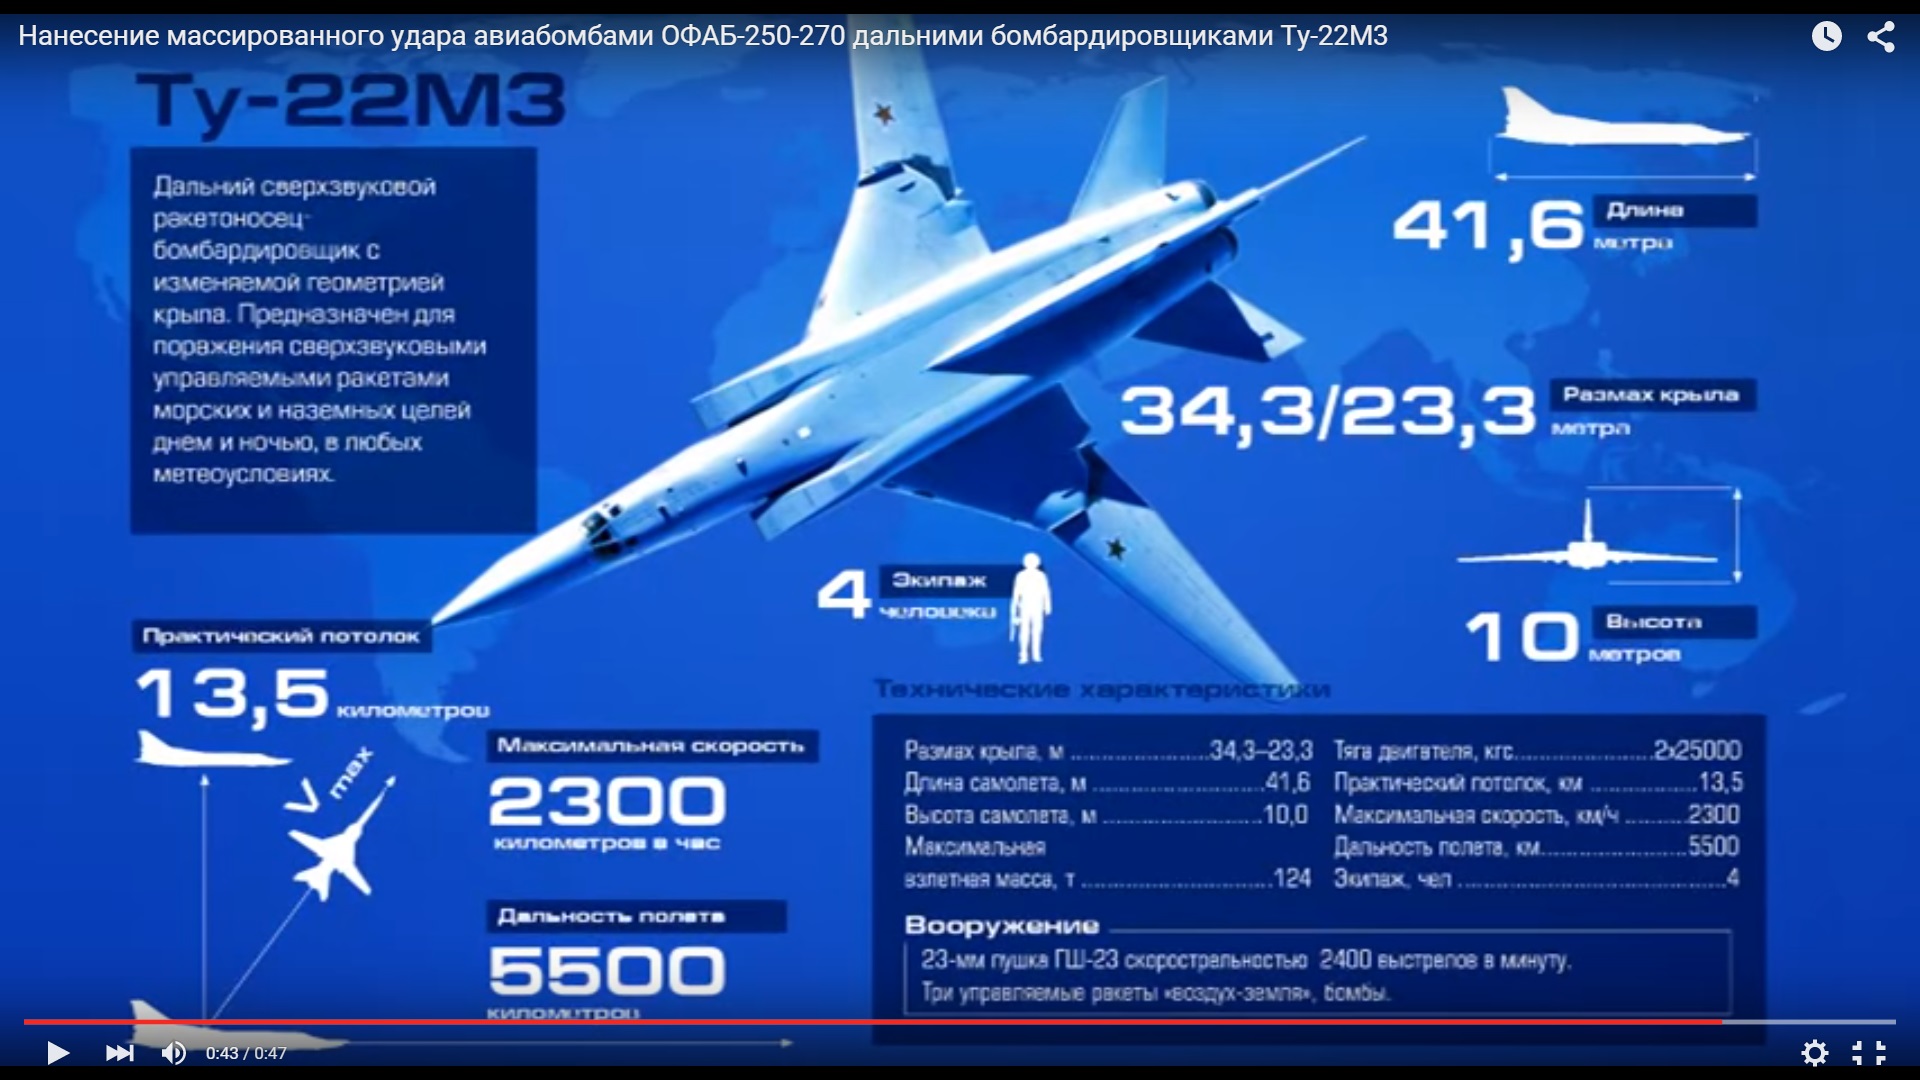 Количество ту 22м3 в россии. Технические характеристики самолета ту 22 м3. Ту-22м3 технические характеристики. Ту-22м3 ТТХ. Сверхзвуковой бомбардировщик ту-22м3 скорость.